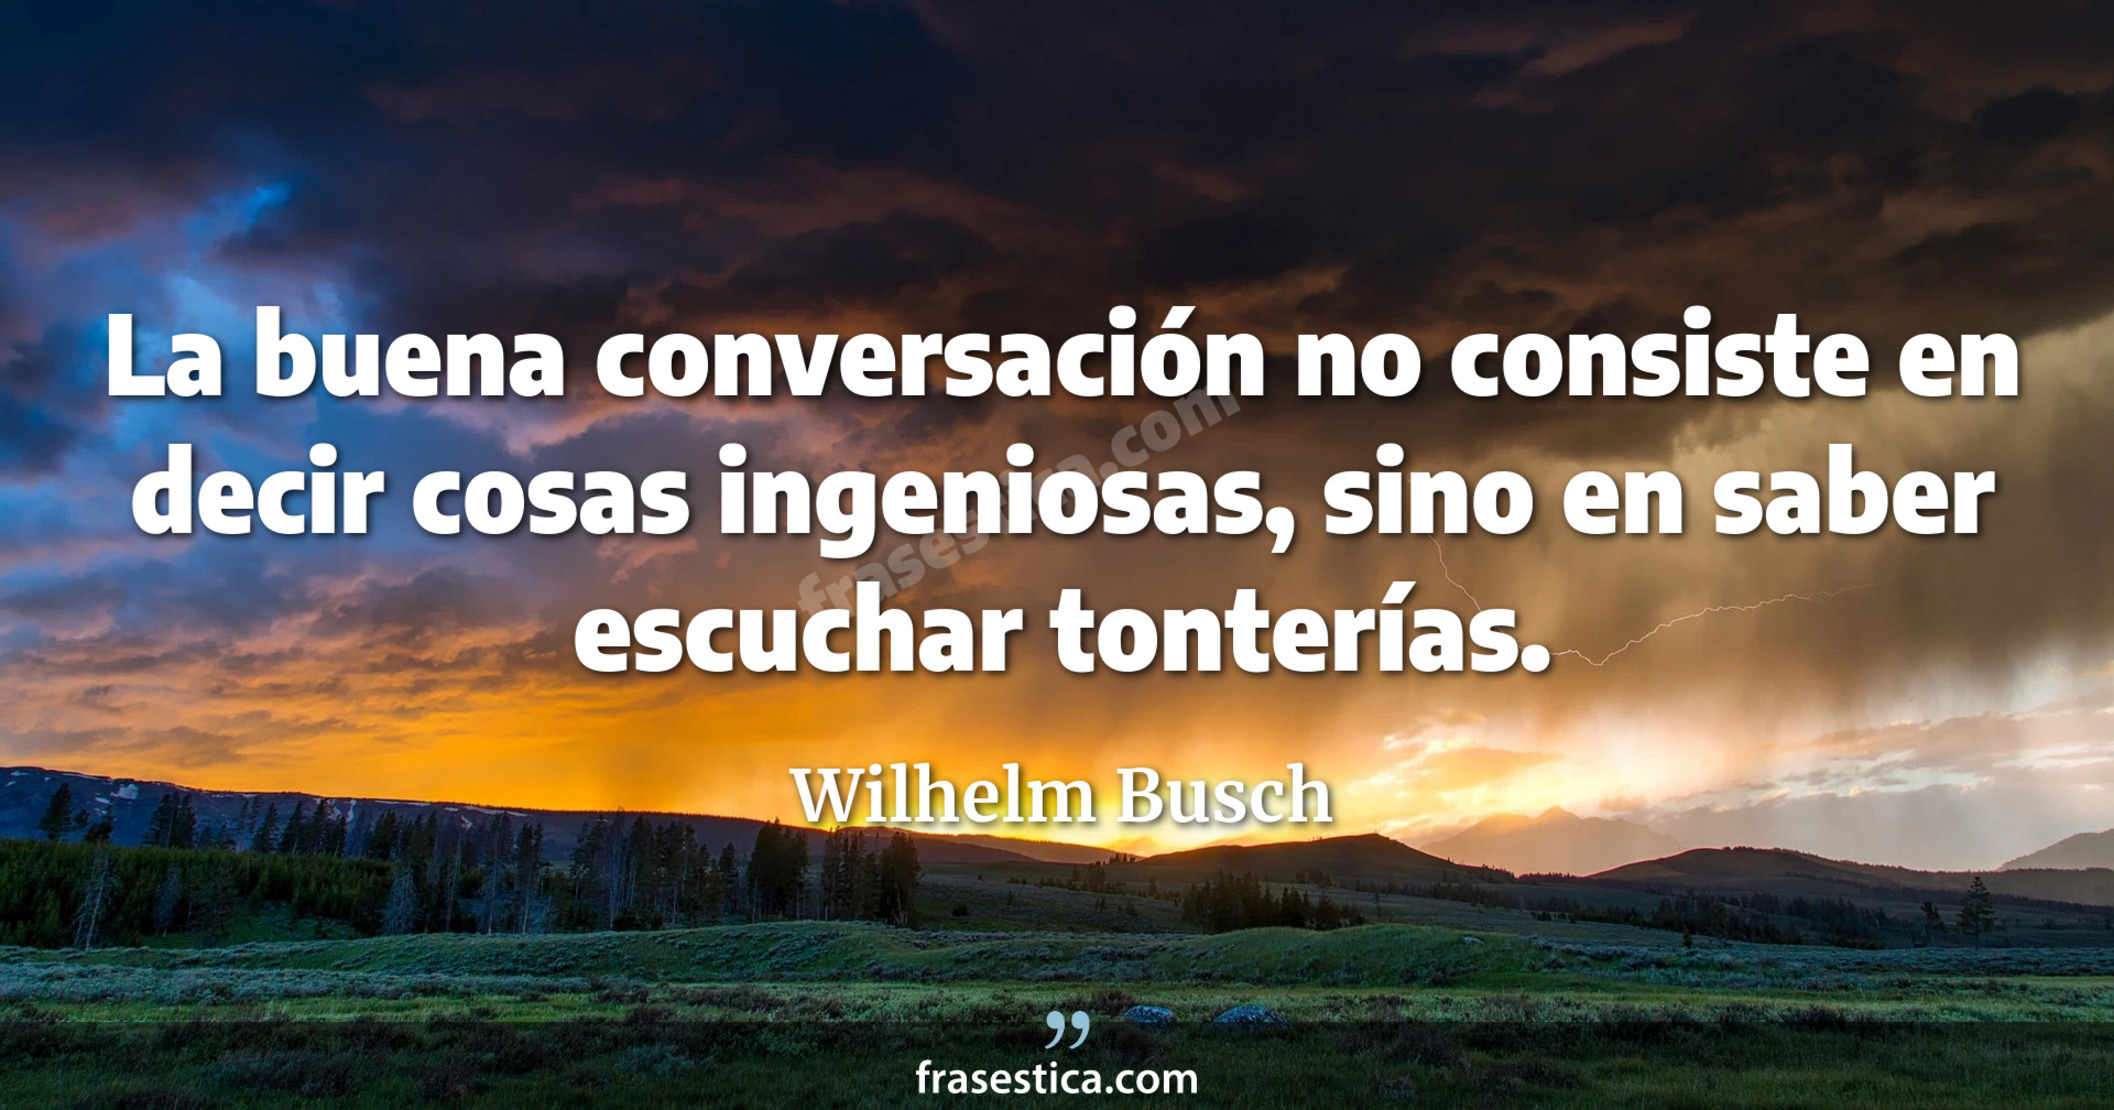 La buena conversación no consiste en decir cosas ingeniosas, sino en saber escuchar tonterías. - Wilhelm Busch